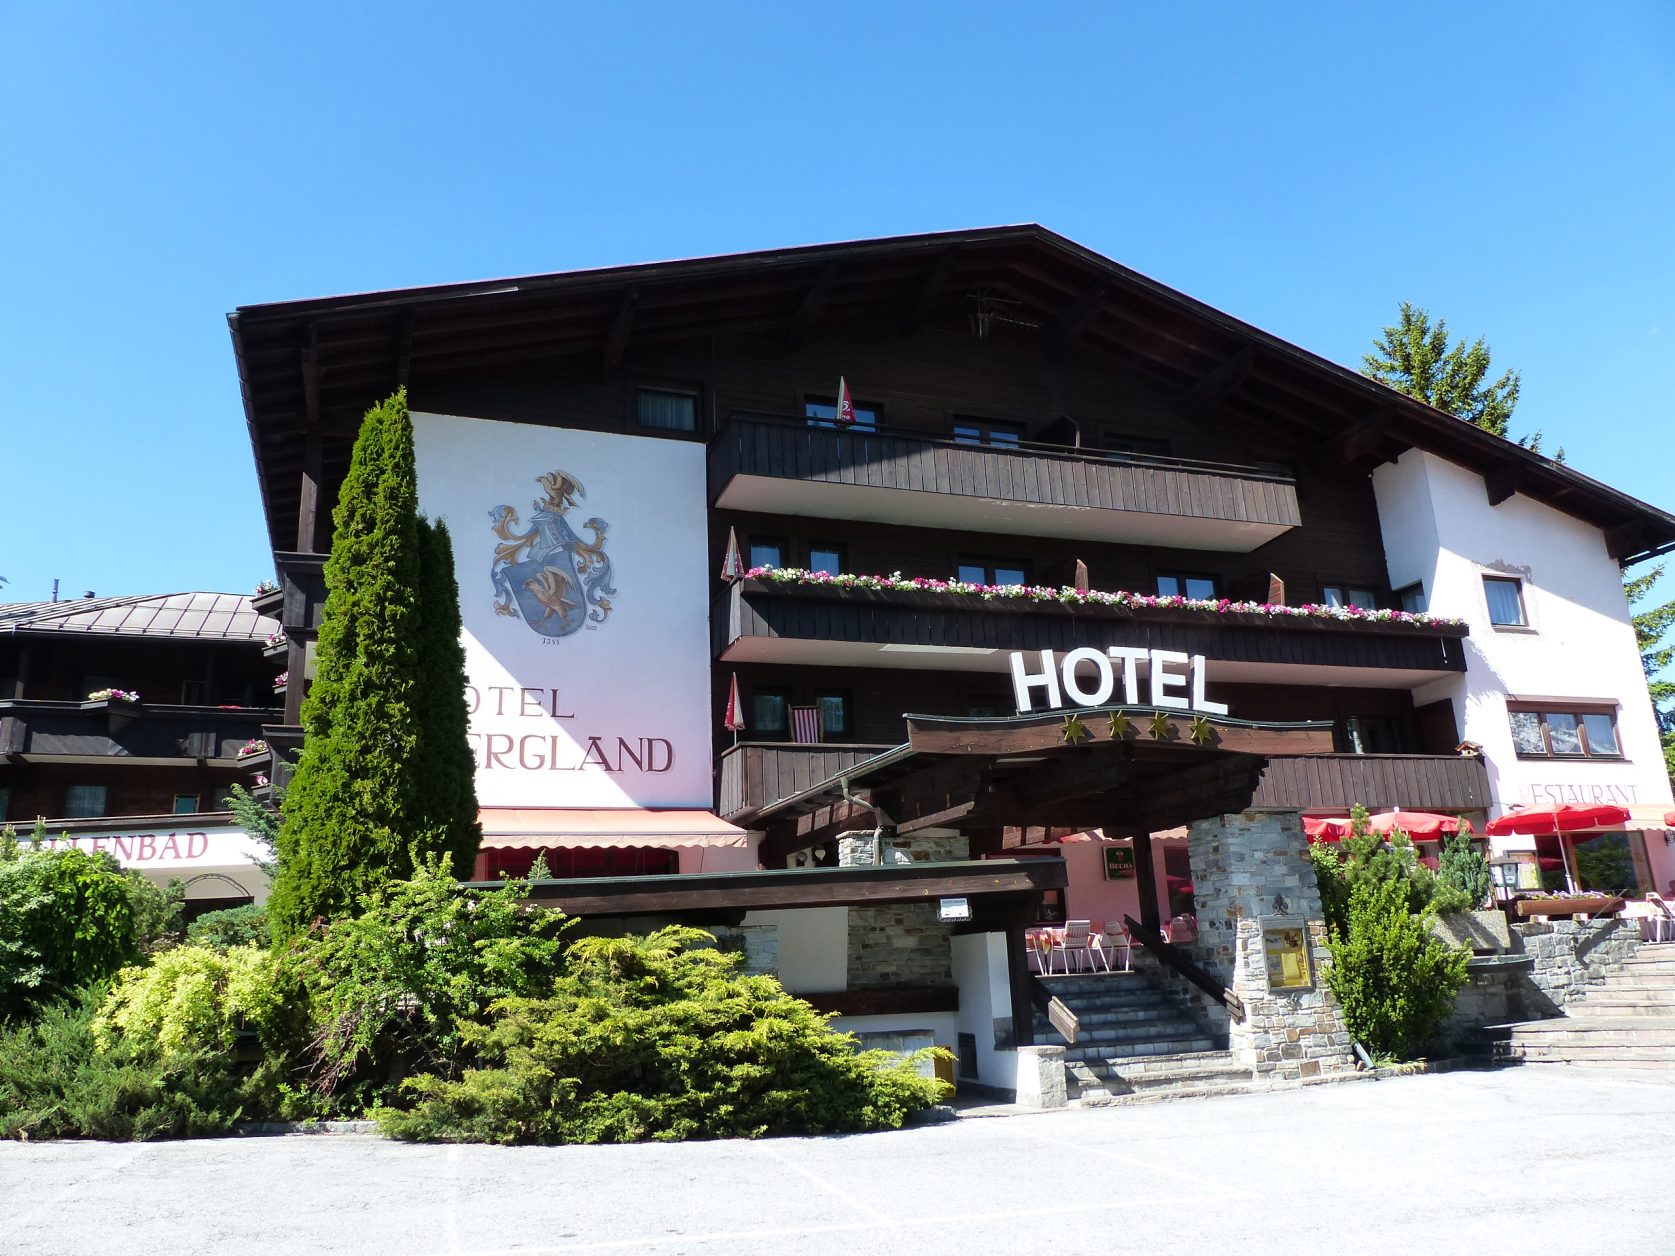 Stätte gediegener Gastlichkeit: Hotel Bergland Obsteig. Foto: D.Weirauch